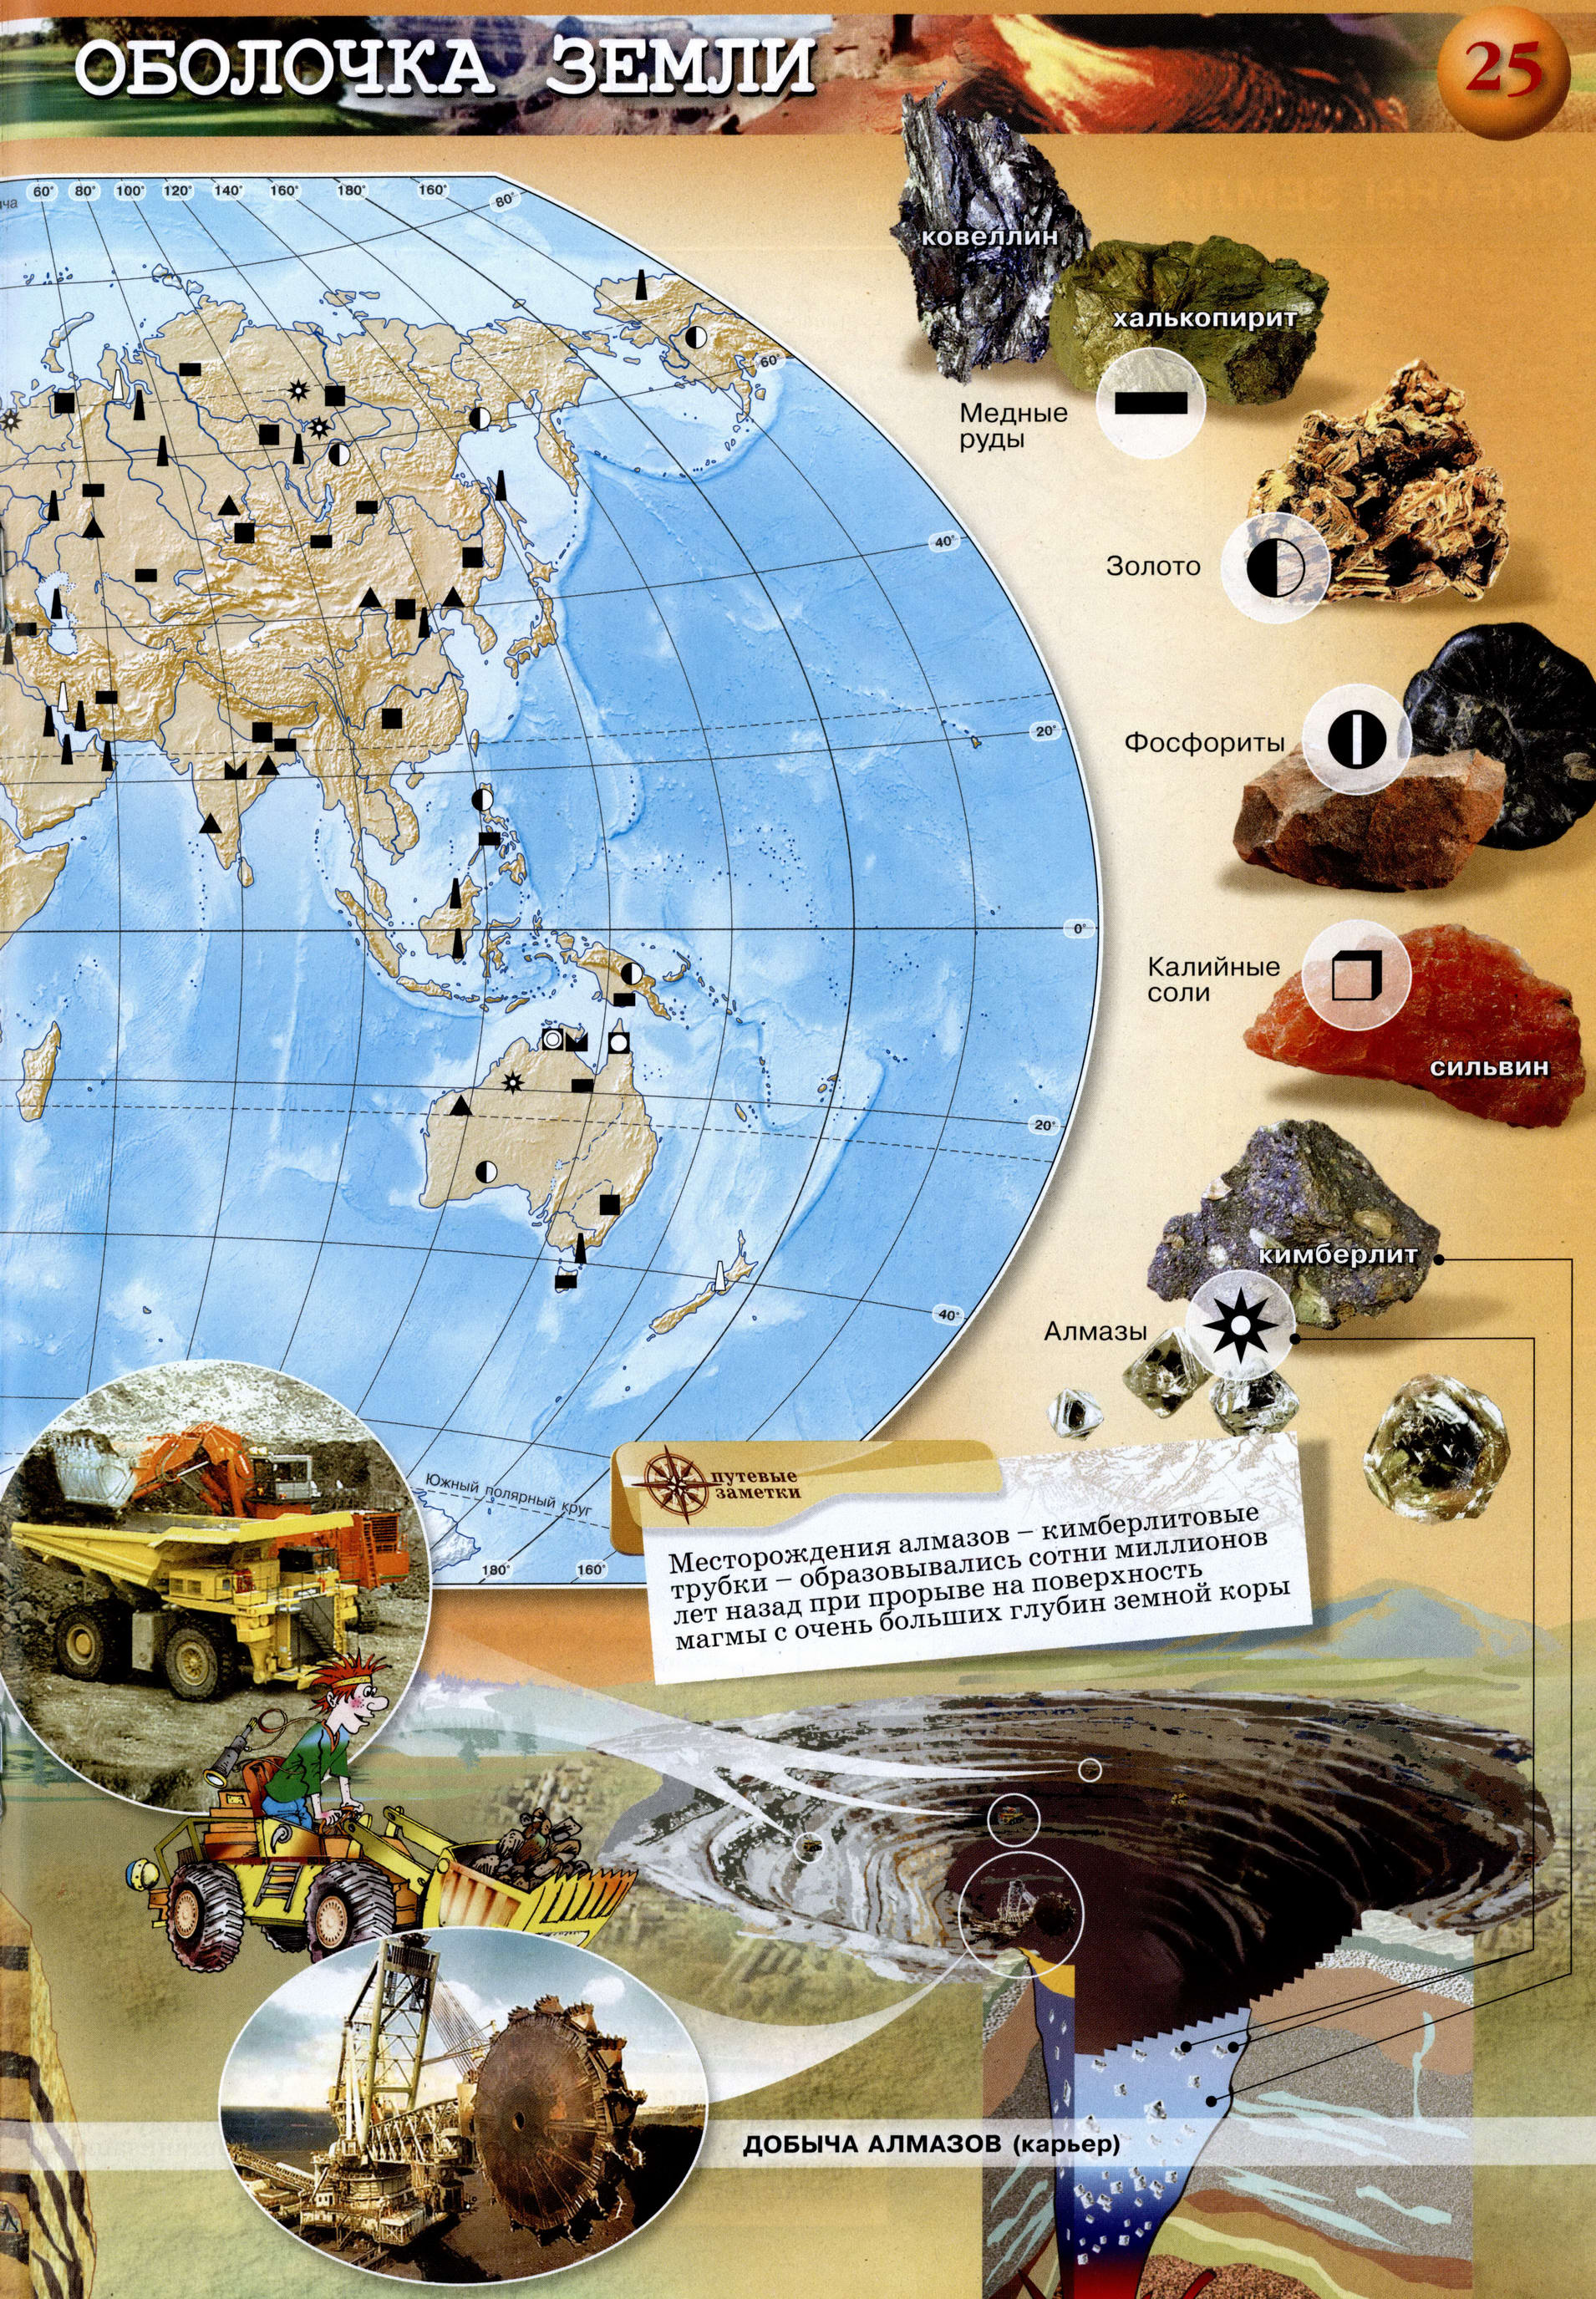 Полезные ископаемые - Атлас 5-6 класс география Сферы